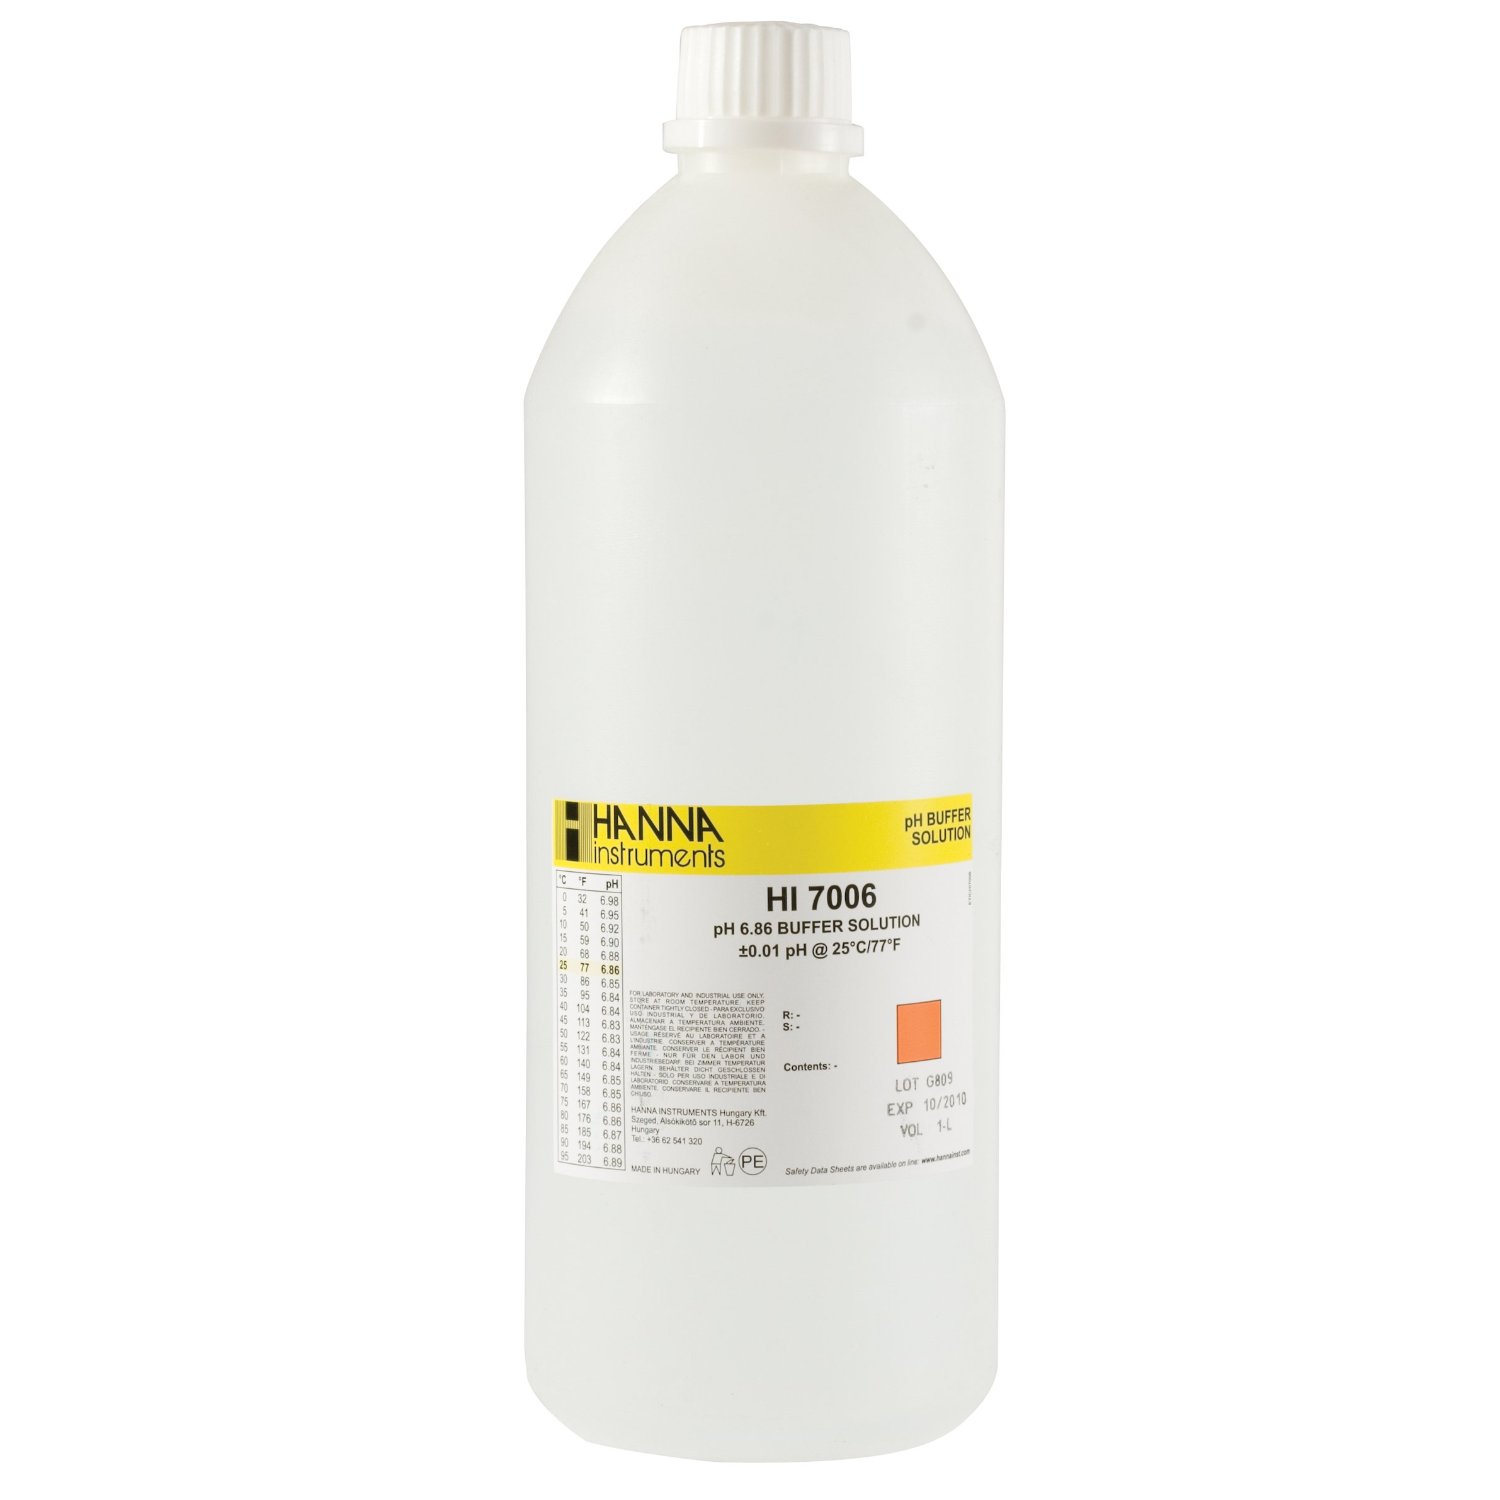 Kalibrierlösung pH 6,86; Standardqualität, 1000mL-Flasche